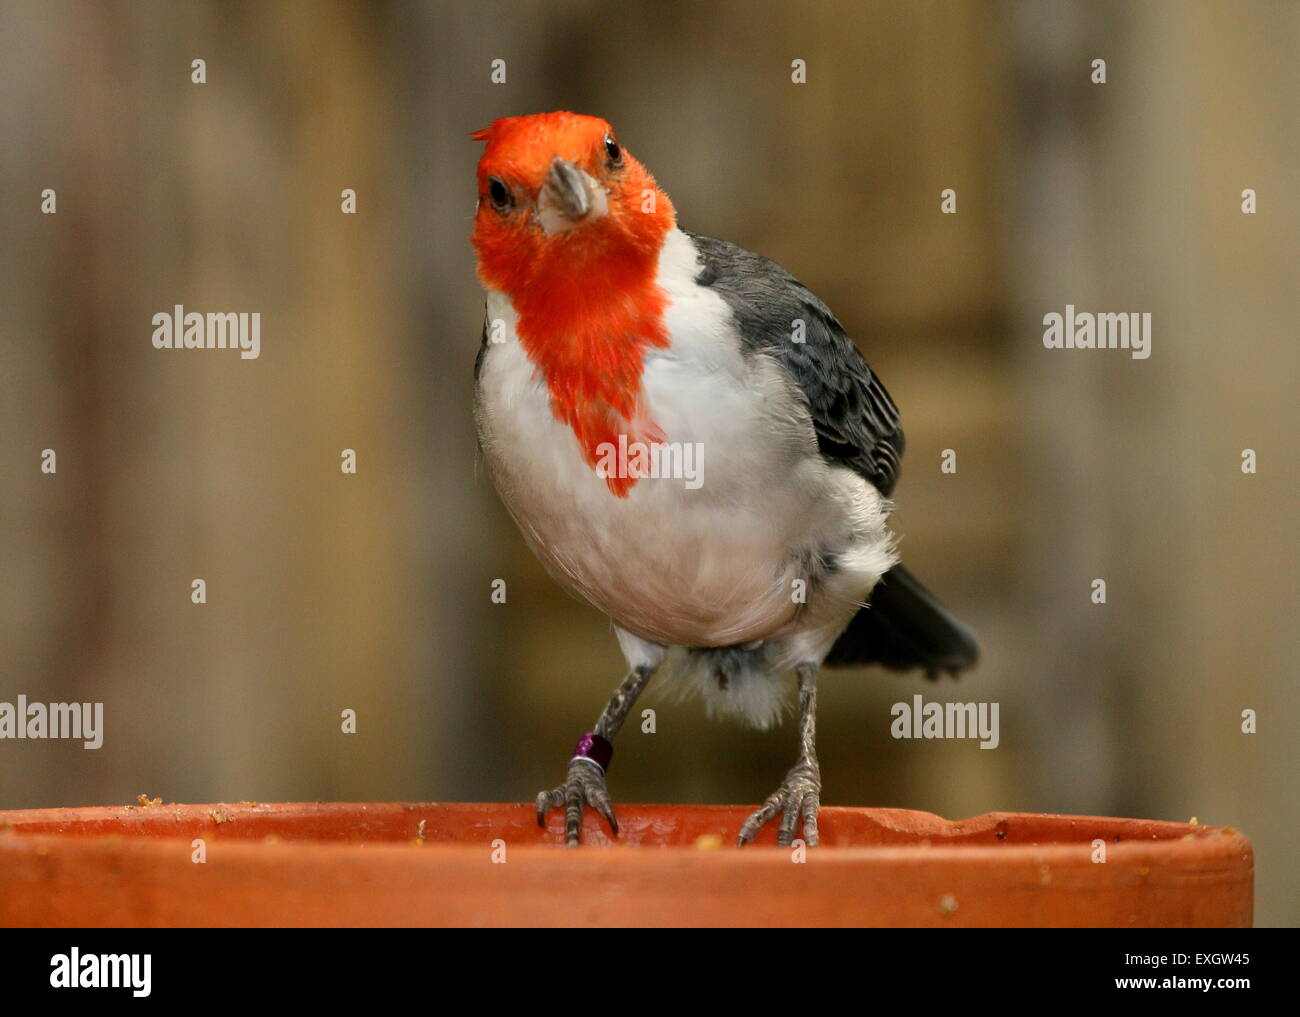 Nahaufnahme von der South American Red crested Kardinal (Paroaria Coronata) - Gefangener Vogel im Avifauna Vogel Zoo, Niederlande Stockfoto